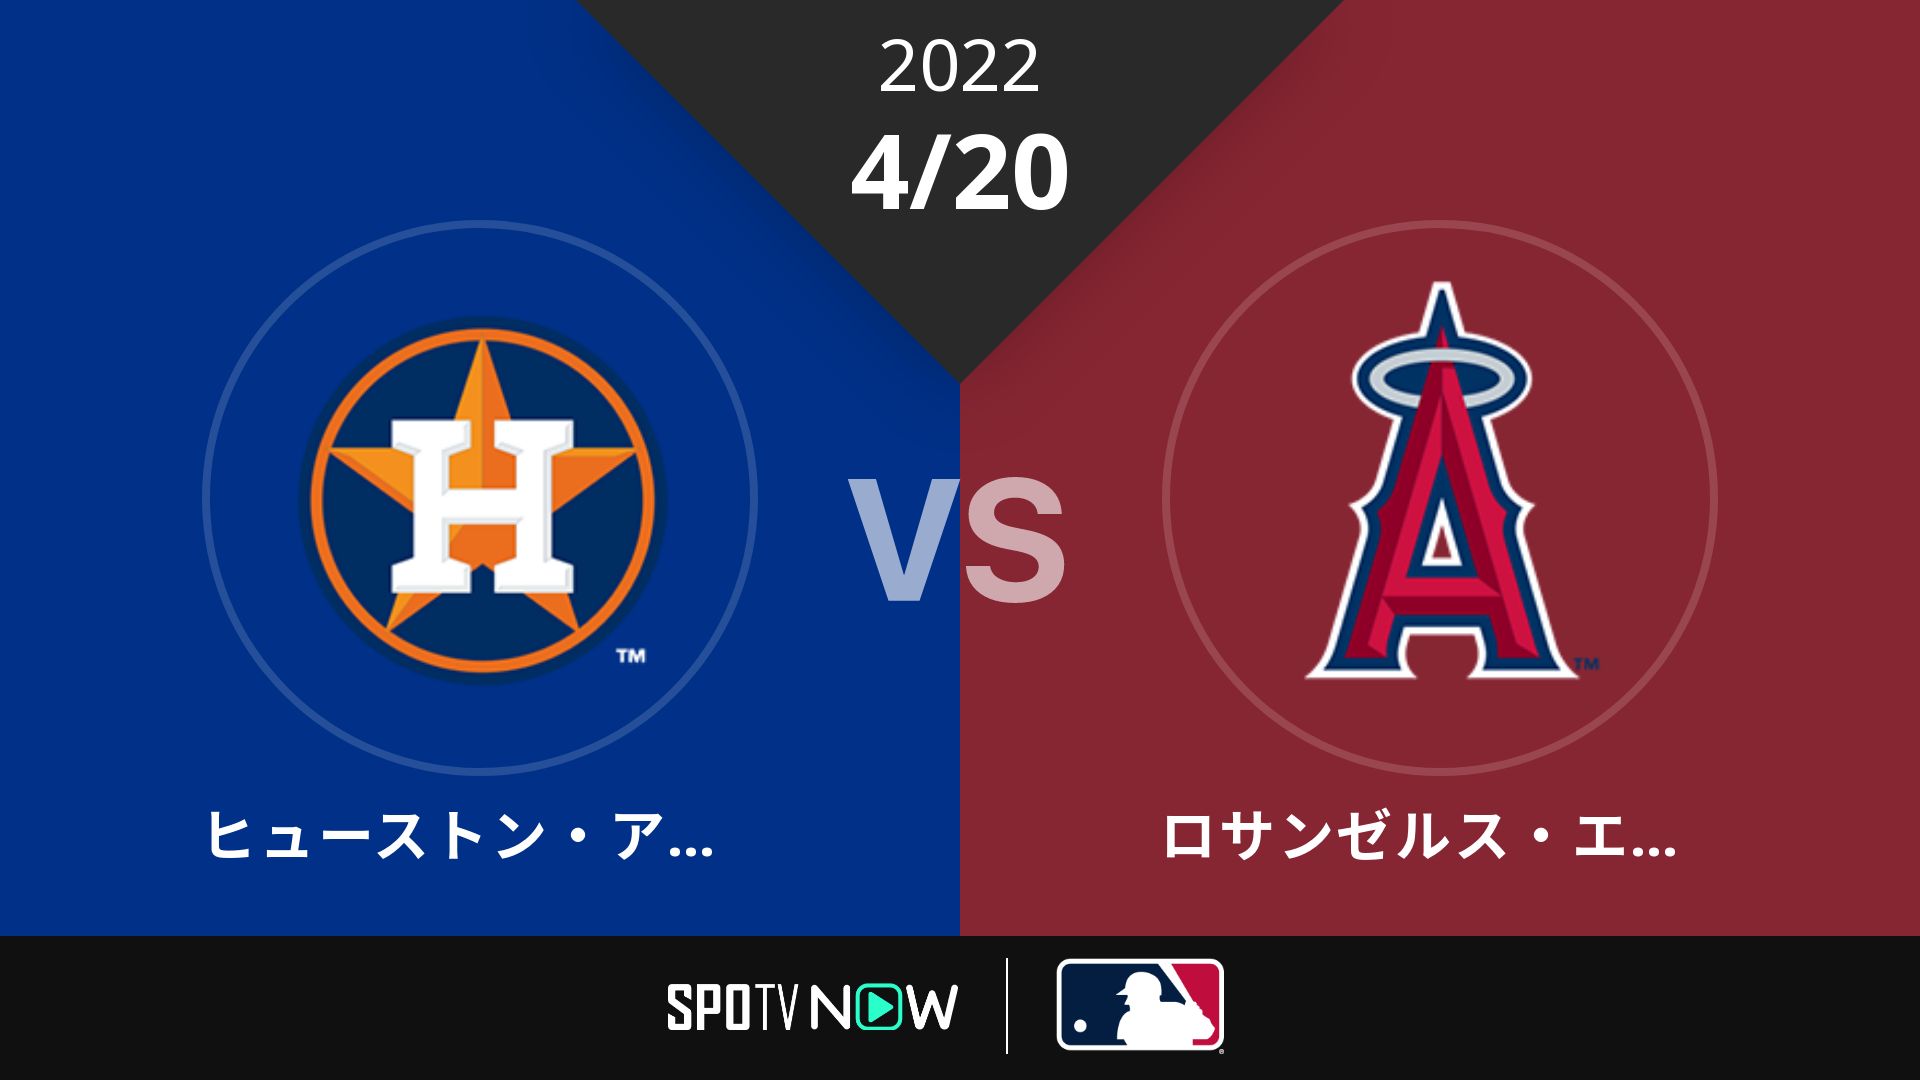 2022/4/20 アストロズ vs エンゼルス [MLB]